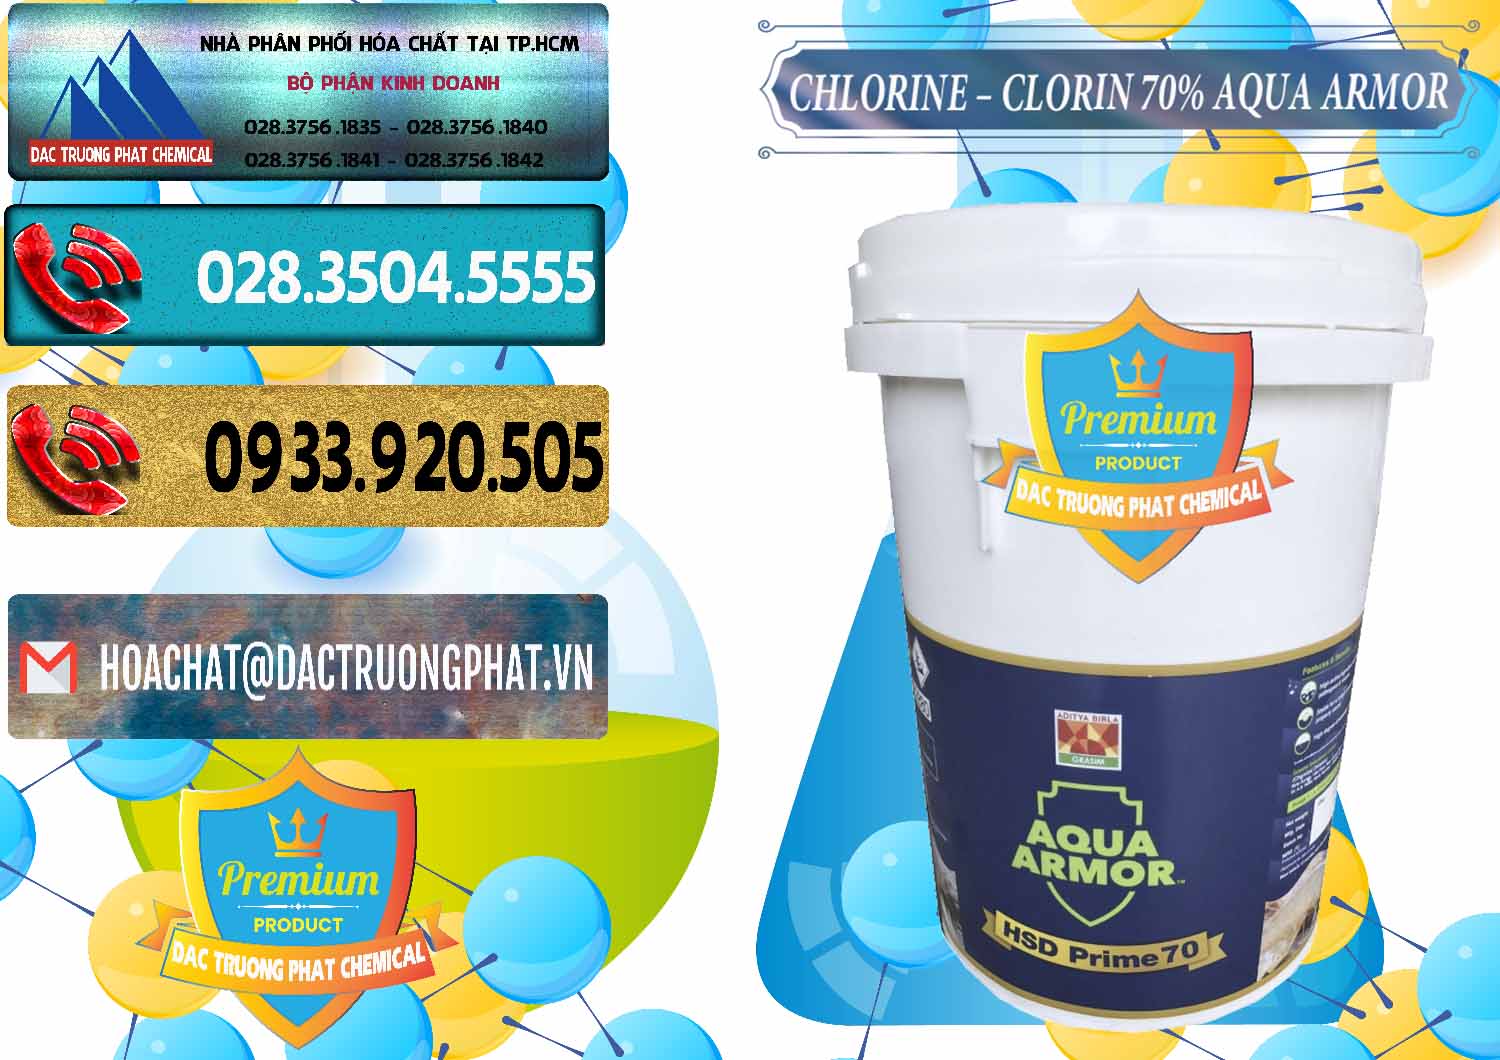 Nơi kinh doanh - bán Chlorine – Clorin 70% Aqua Armor Aditya Birla Grasim Ấn Độ India - 0241 - Chuyên phân phối - cung ứng hóa chất tại TP.HCM - hoachatdetnhuom.com